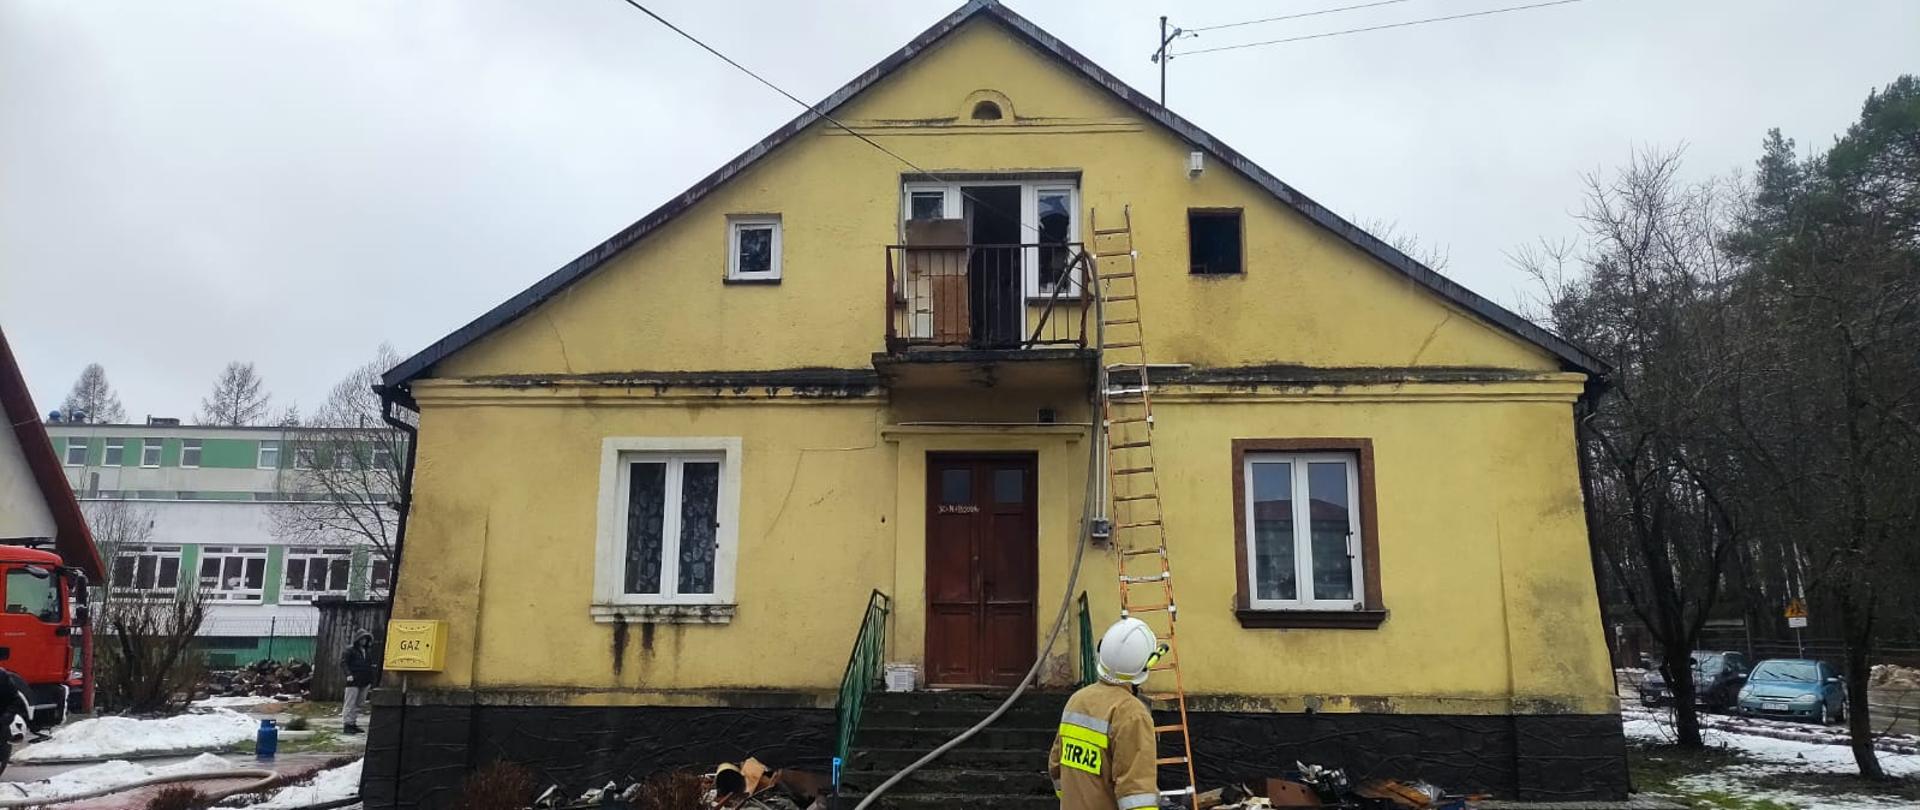 Zdjęcie przedstawia budynek mieszkalny gdzie doszło do pożaru na poddaszu. Do balkonu przystawiona została drabina, widać też wąż gaśniczy wciągnięty do wnętrza domu. Przed budynkiem stoi strażak.